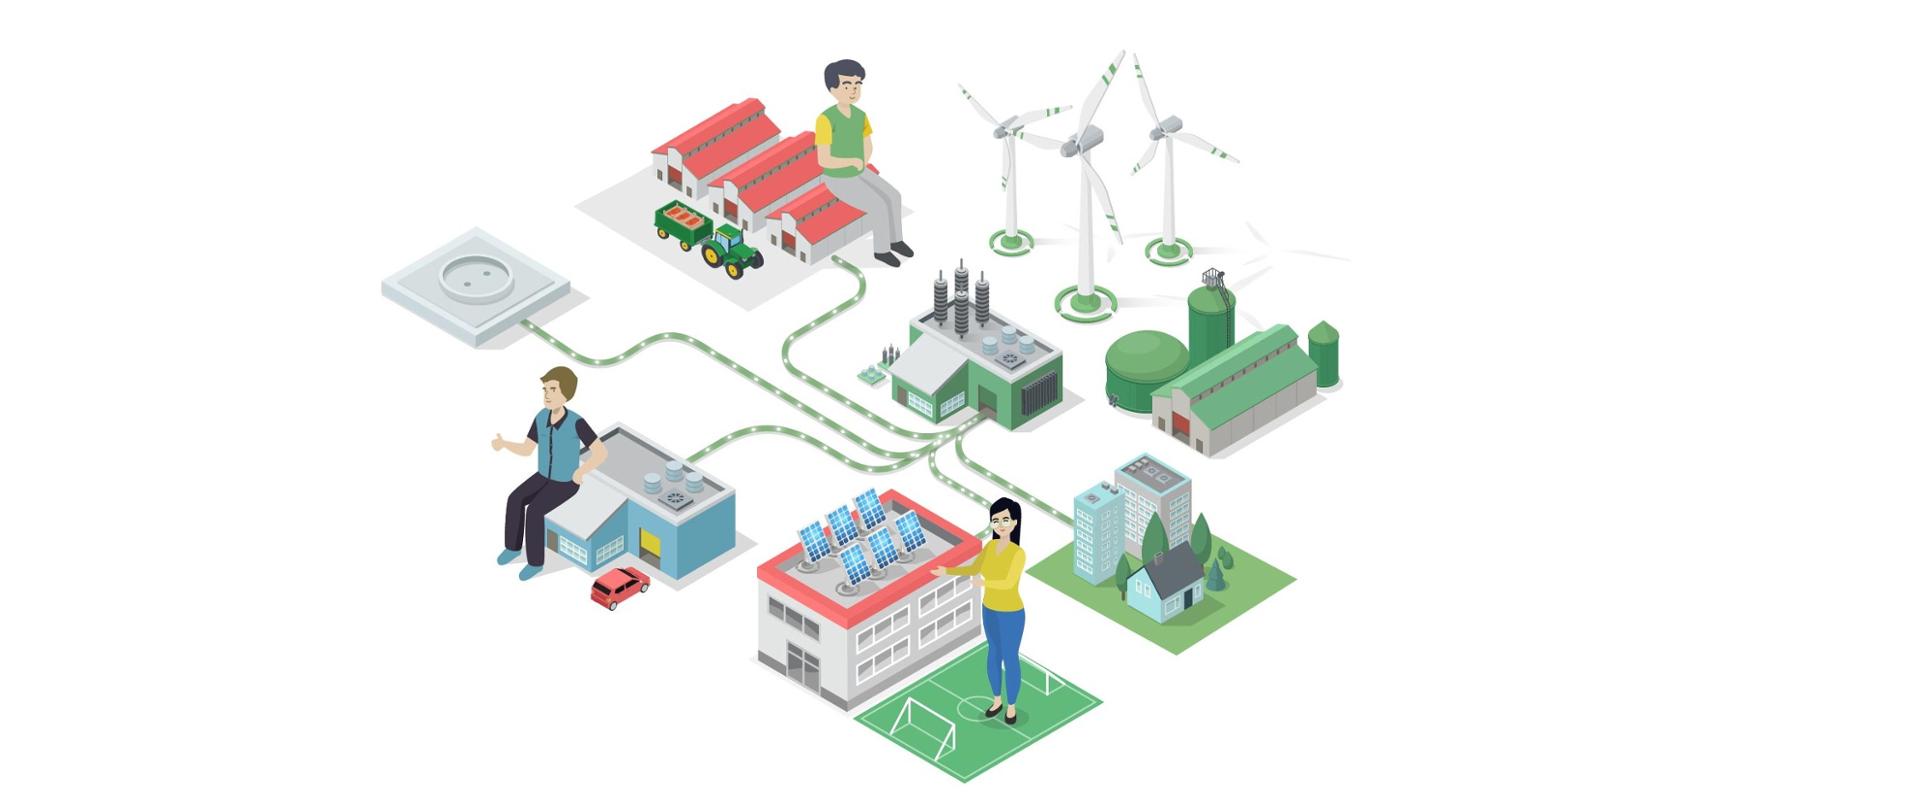 Animowany schemat lokalnych mocy wytwórczych OZE: elektownia połączona ze szkołą na której znajdują się panele fotowoltaiczne, farmą wiatraków, zbiornikiem na biopaliwo i innymi lokalnymi wytwórcami OZE.